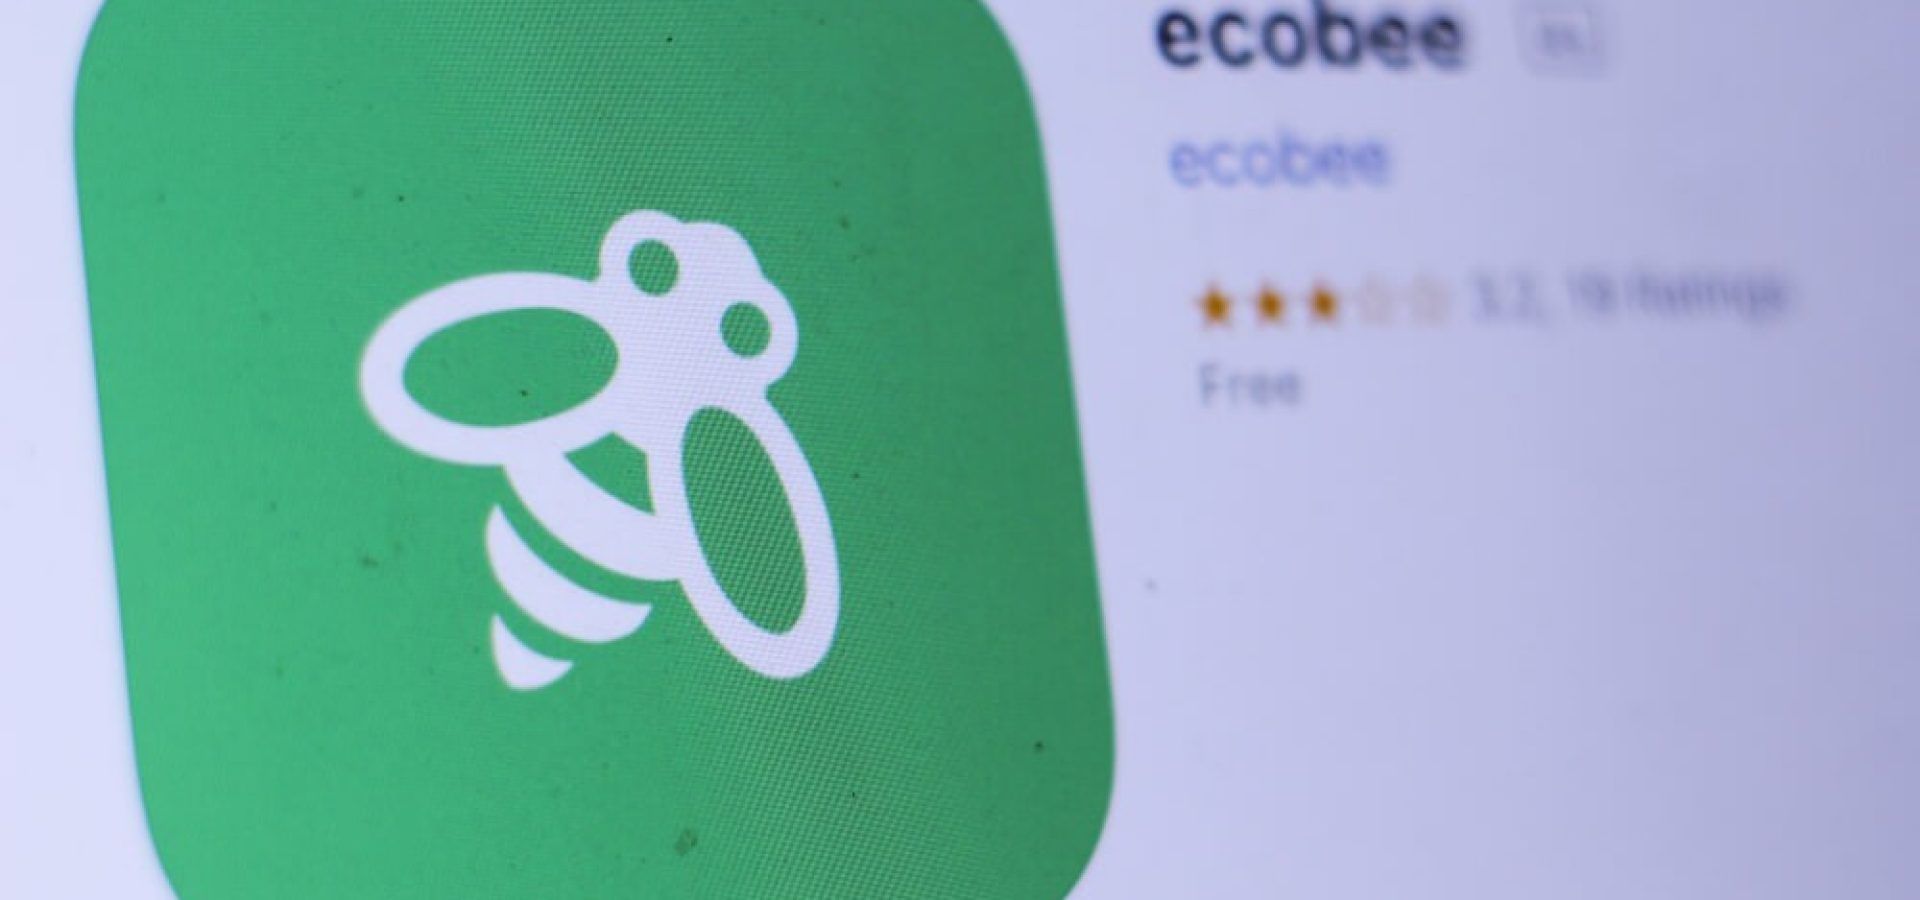 ecobee app in play store.